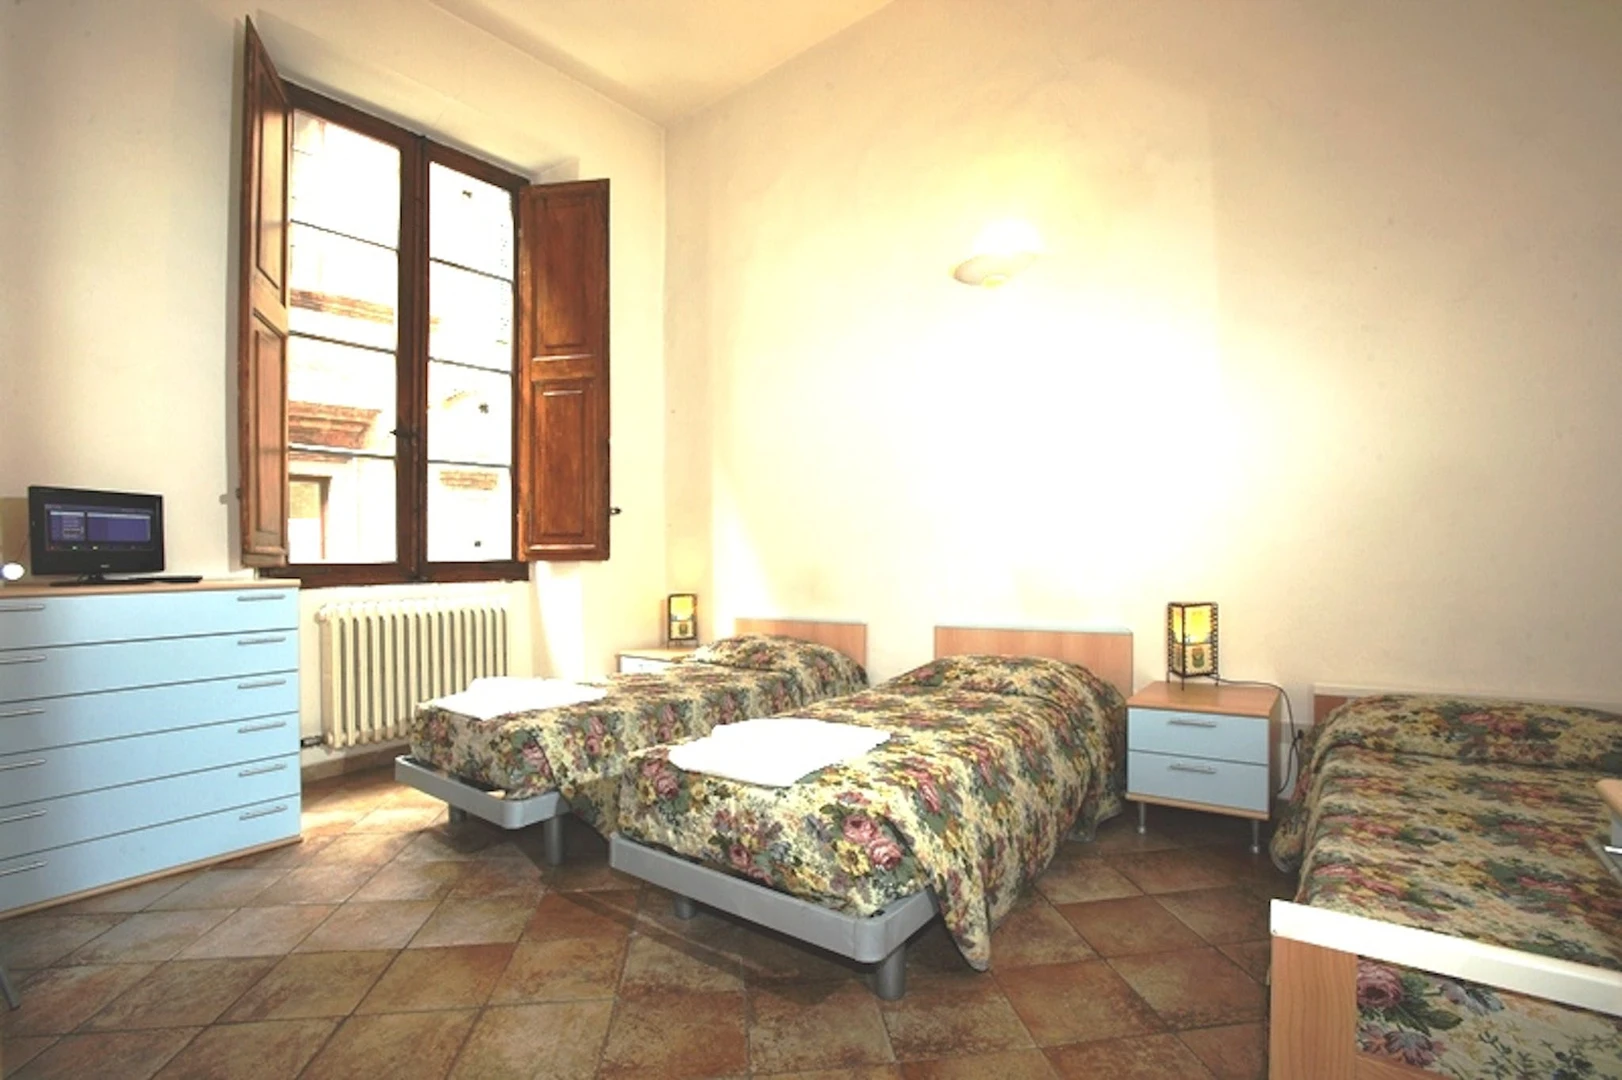 Luminosa stanza condivisa in affitto a Siena